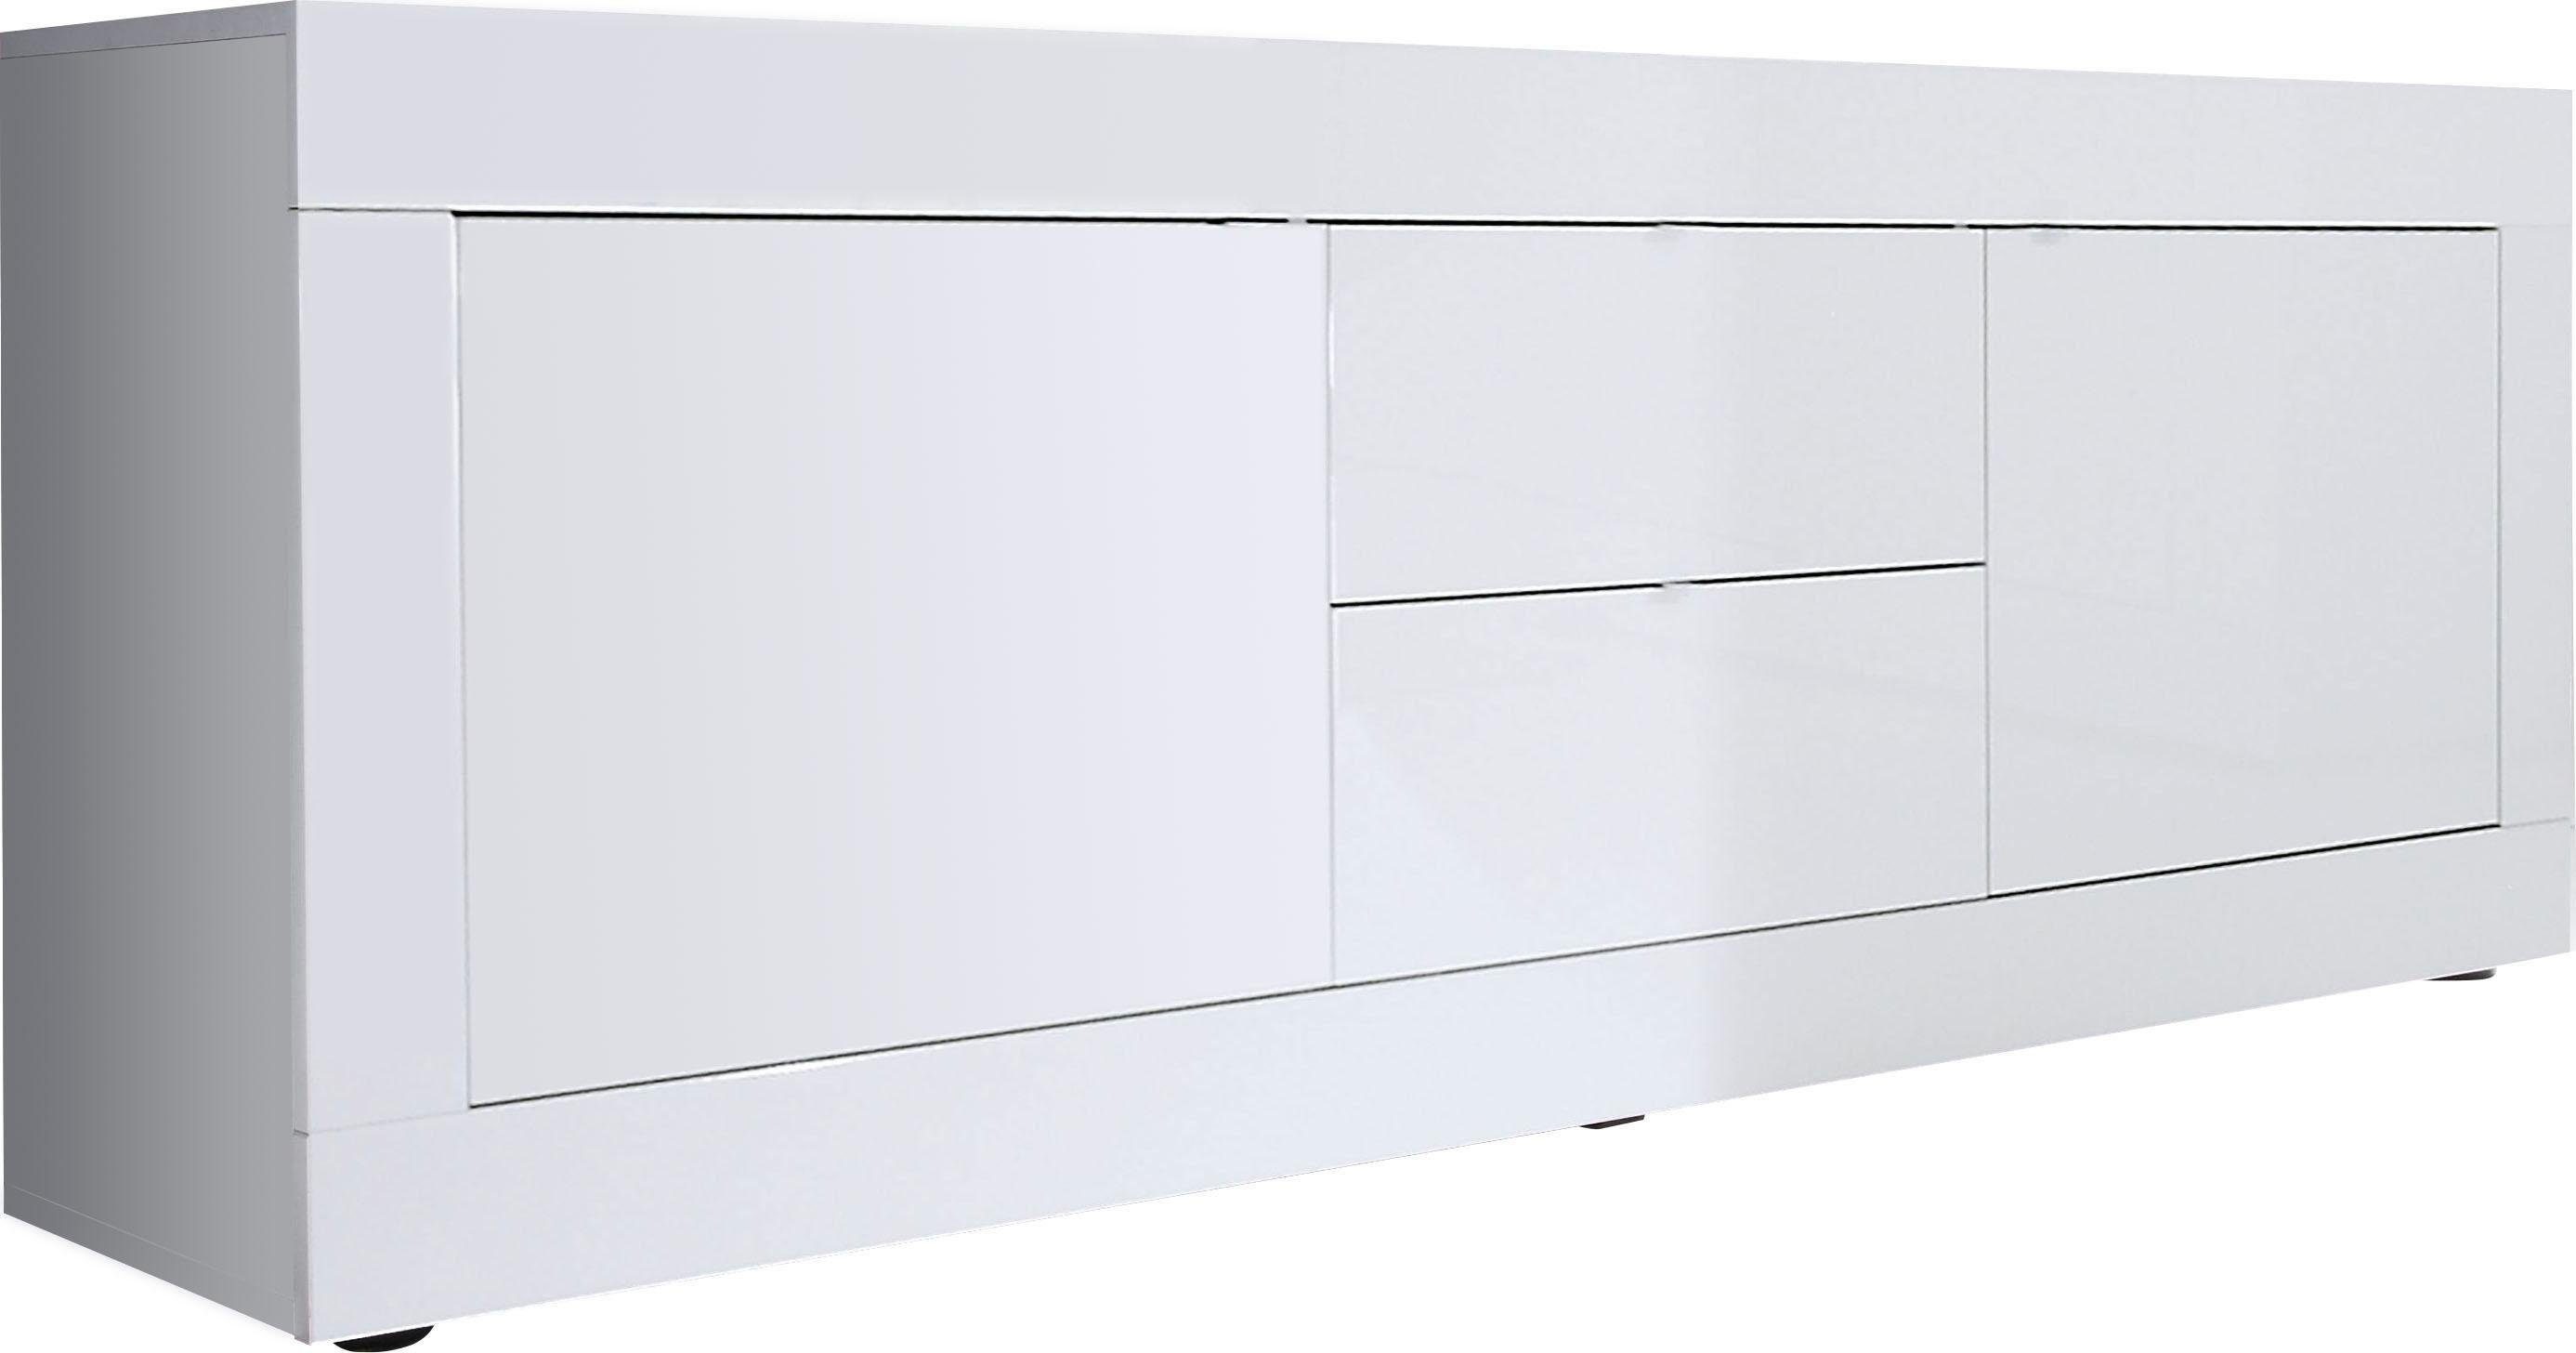 LC Lowboard Basic Breite 210 cm, TV-Board 2 Türen, 2 Schubkästen, TV-Schrank, Metallgriff, moderne Rahmenoptik, viel Stauraum, Farbauswahl